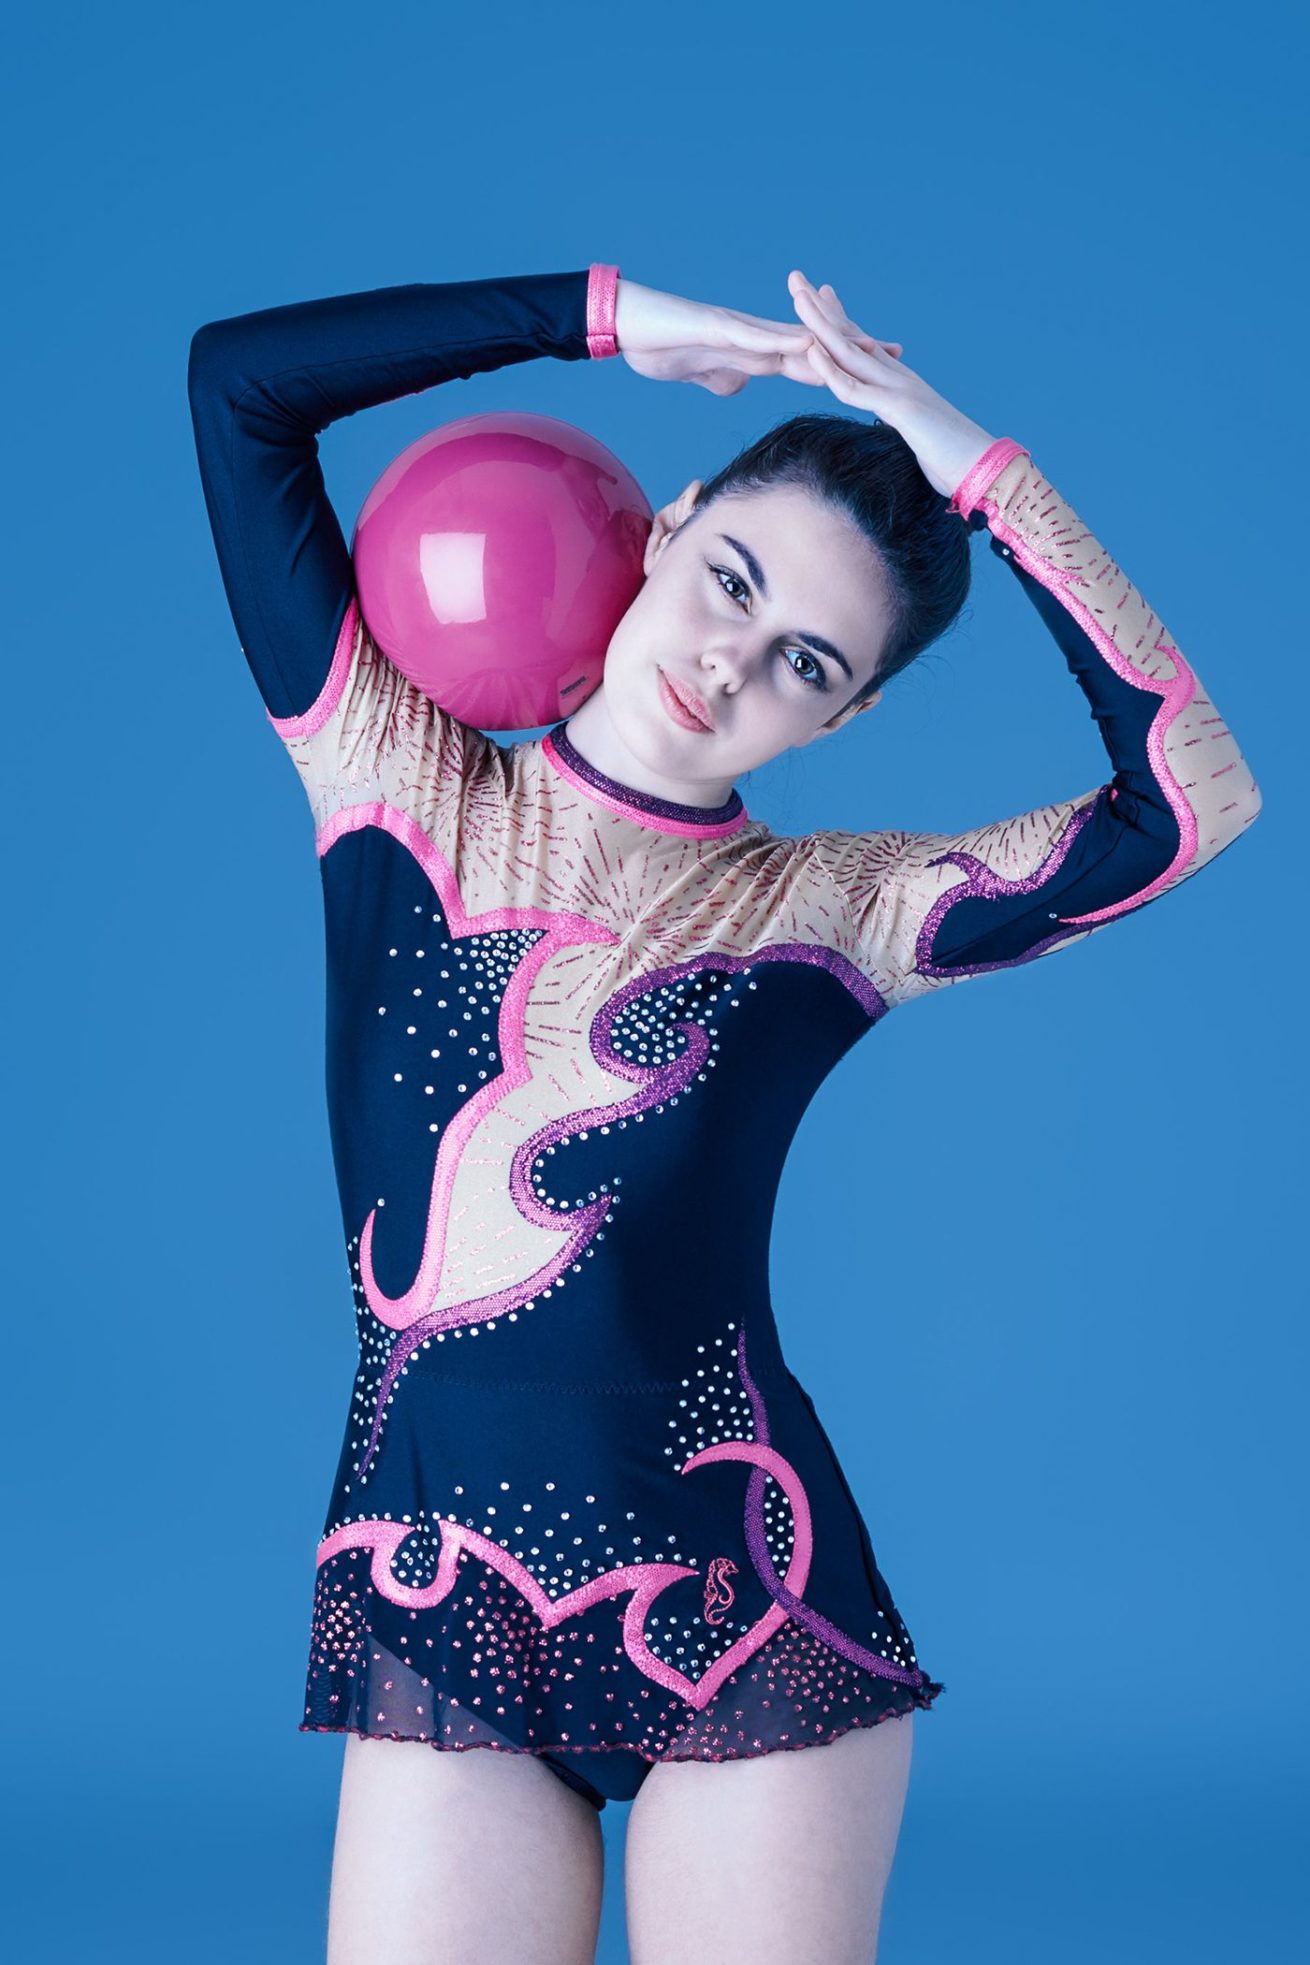 Portrait Gymnastique pour Jeune Fille par Olivier Fabre, Photographe Professionnel. 2020 ©️ Tous droits réservés.